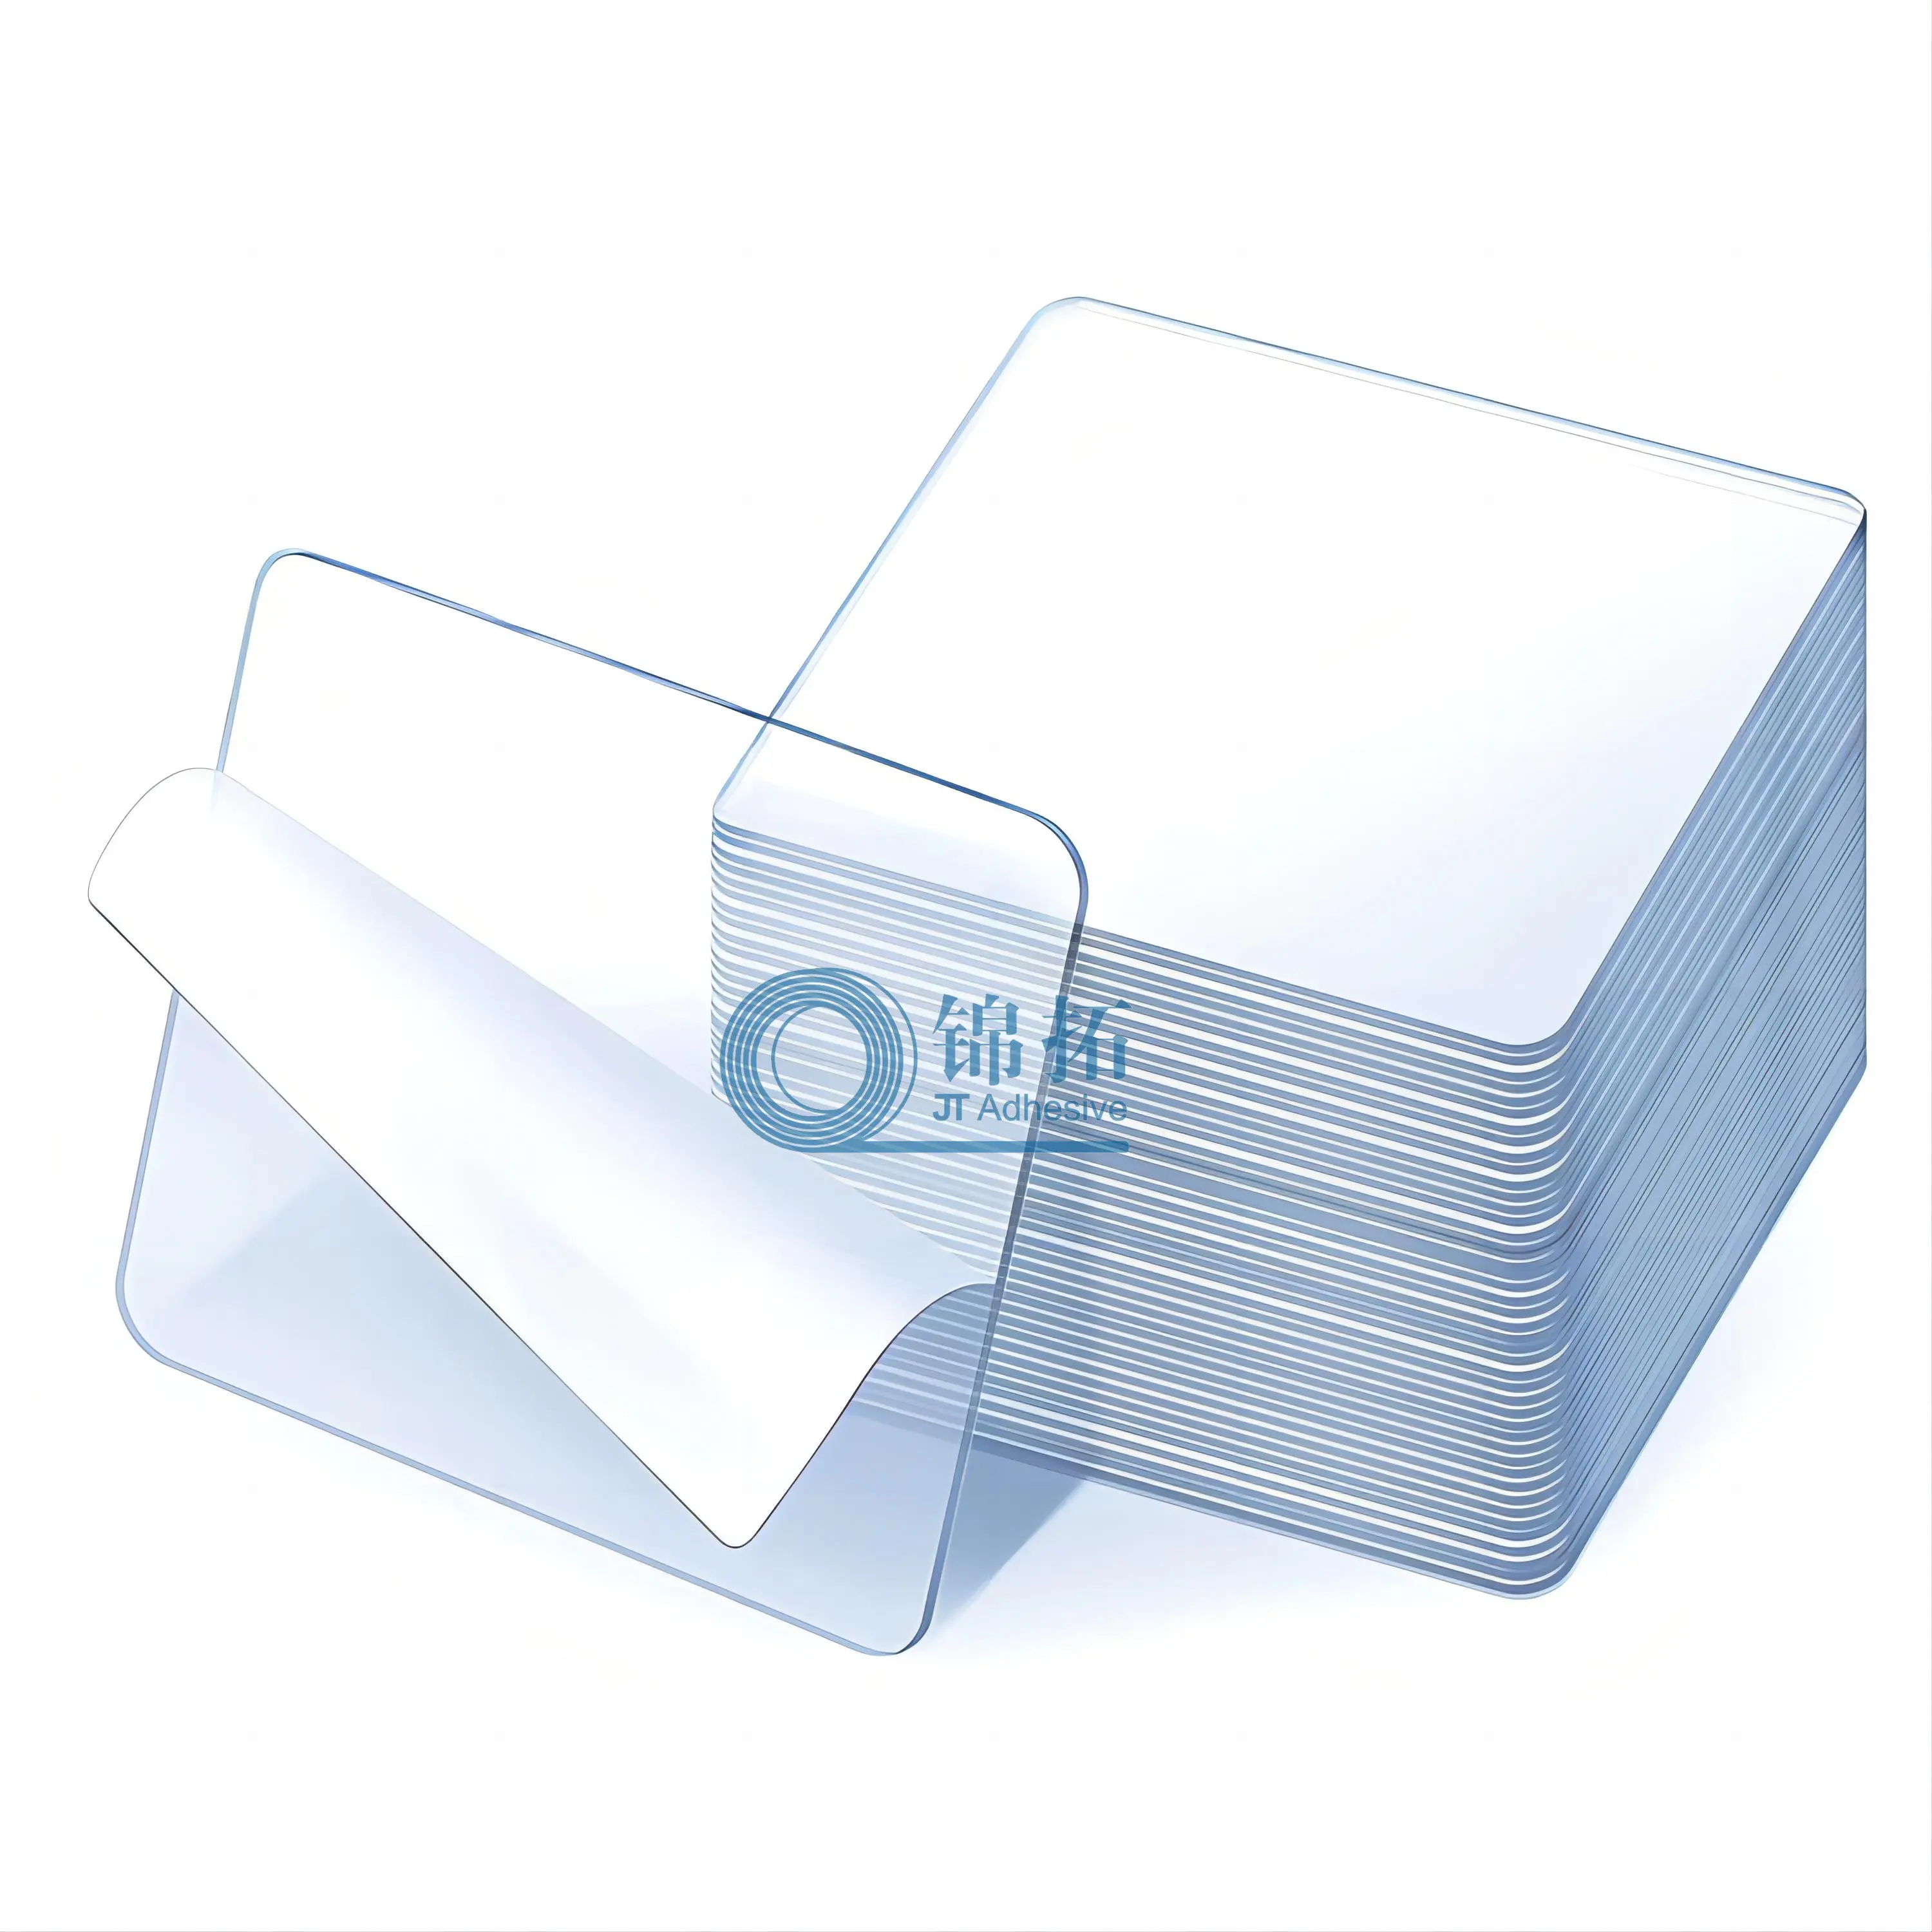 뜨거운 판매 투명 방수 높은 끈적 재사용 다목적 나노 투명 벽 스틱 젤 접착 테이프